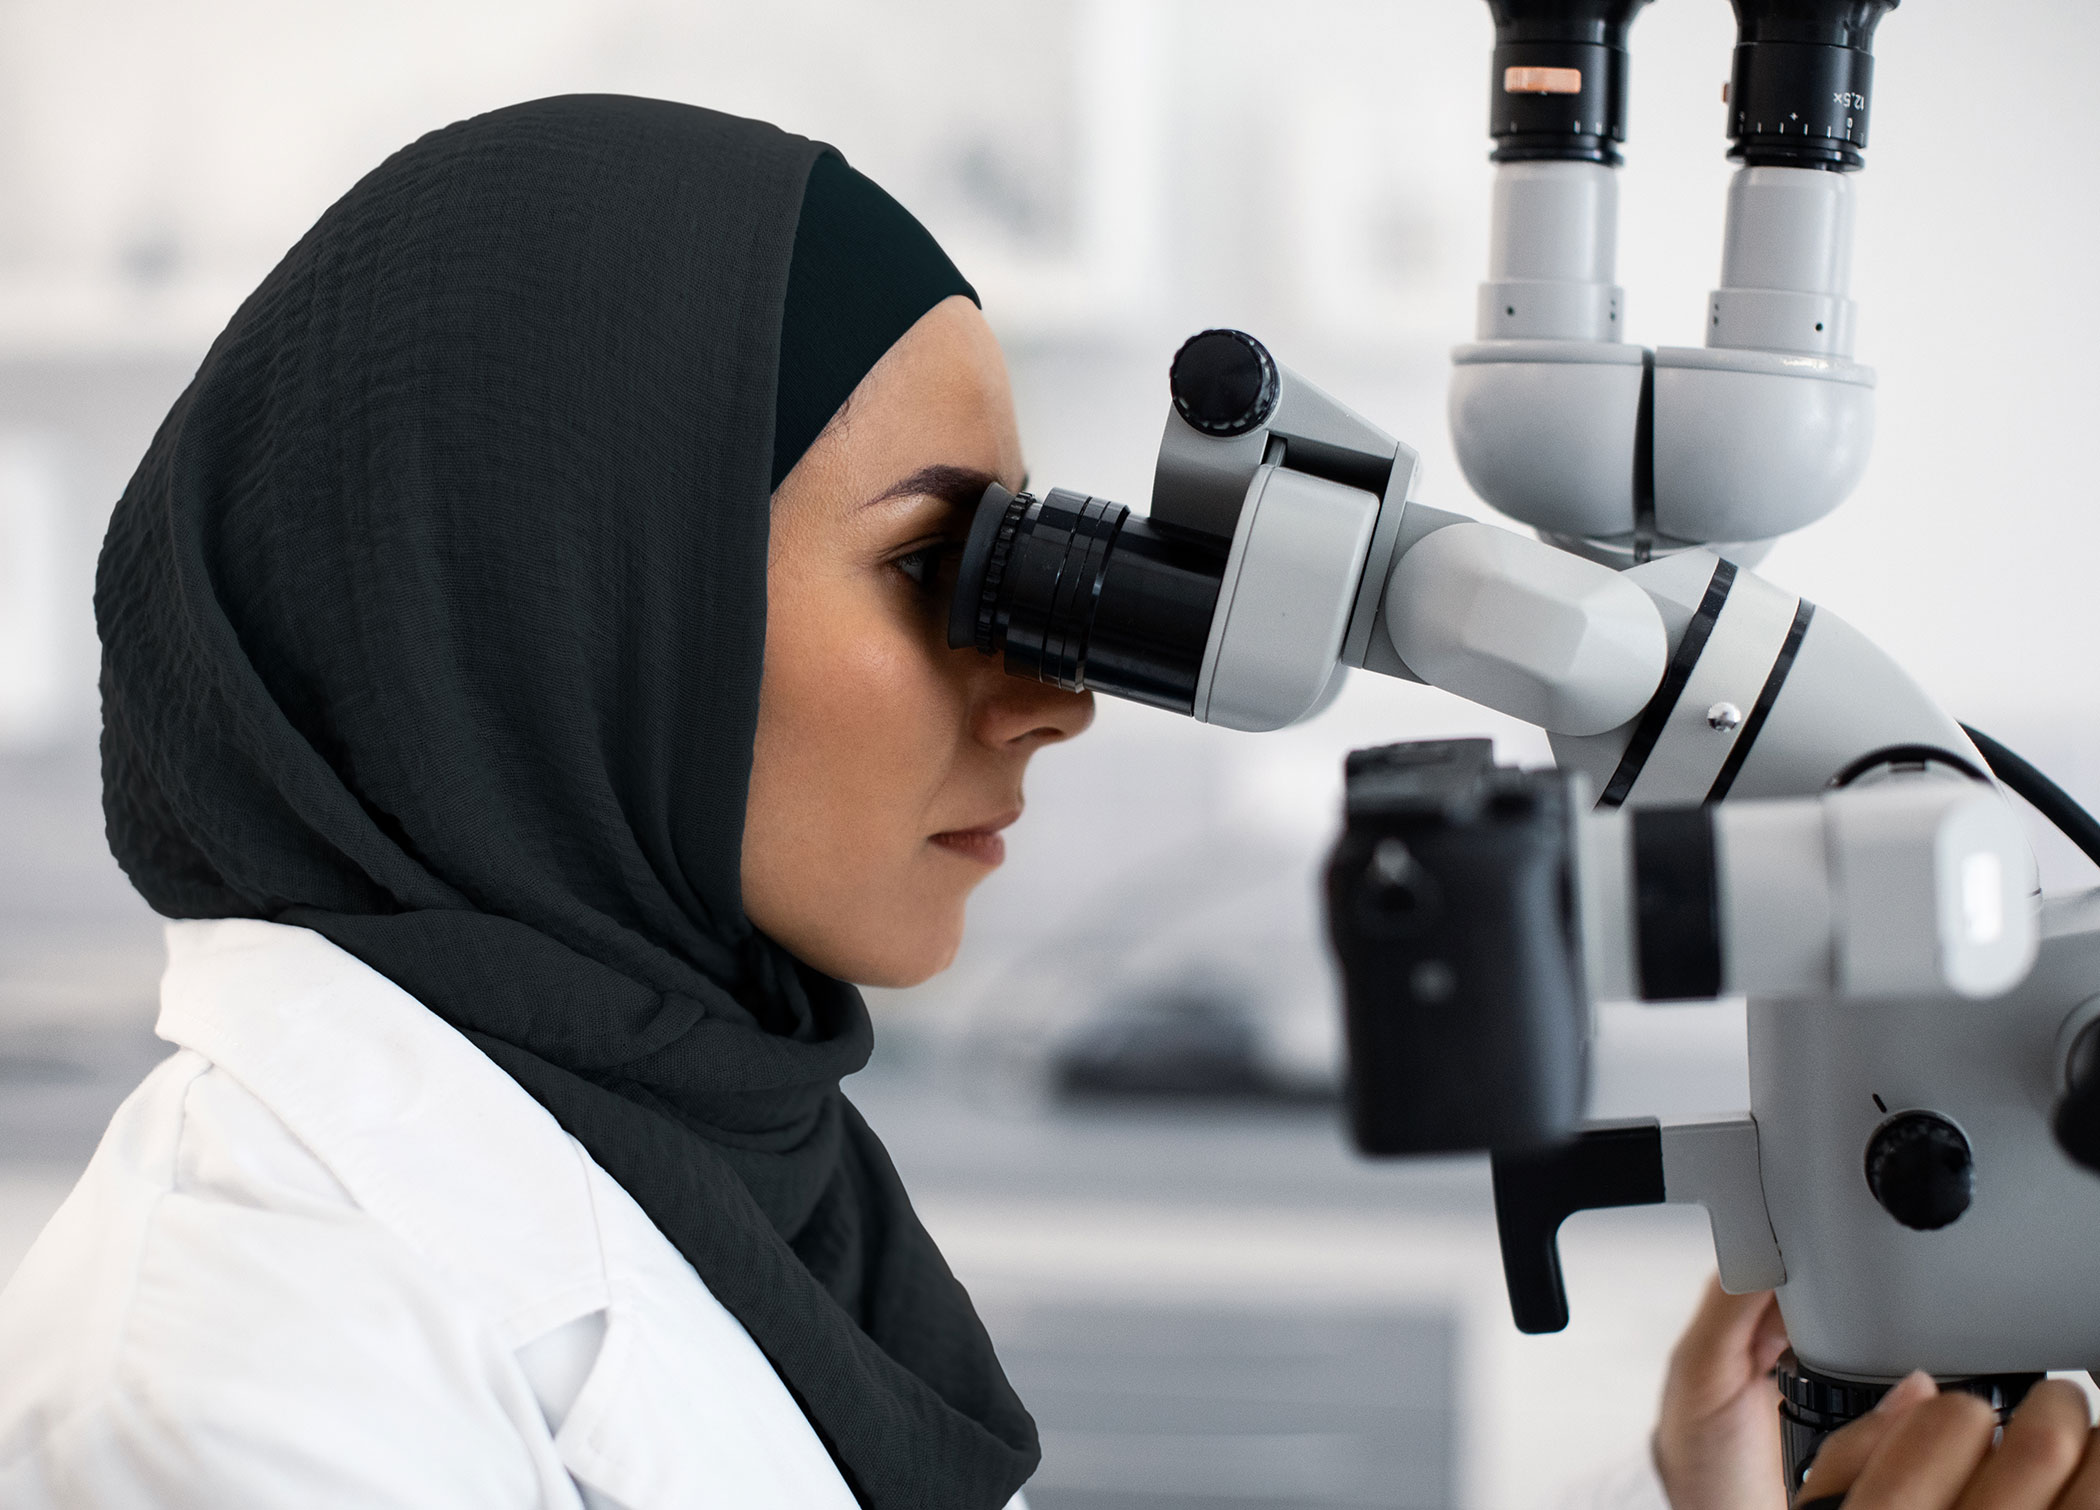 مجموعة كيزاد تستعرض البنية التحتية الحيوية التي توفرها لدعم تطور قطاع علوم الحياة في معرض ومؤتمر الصحة العربي 2023